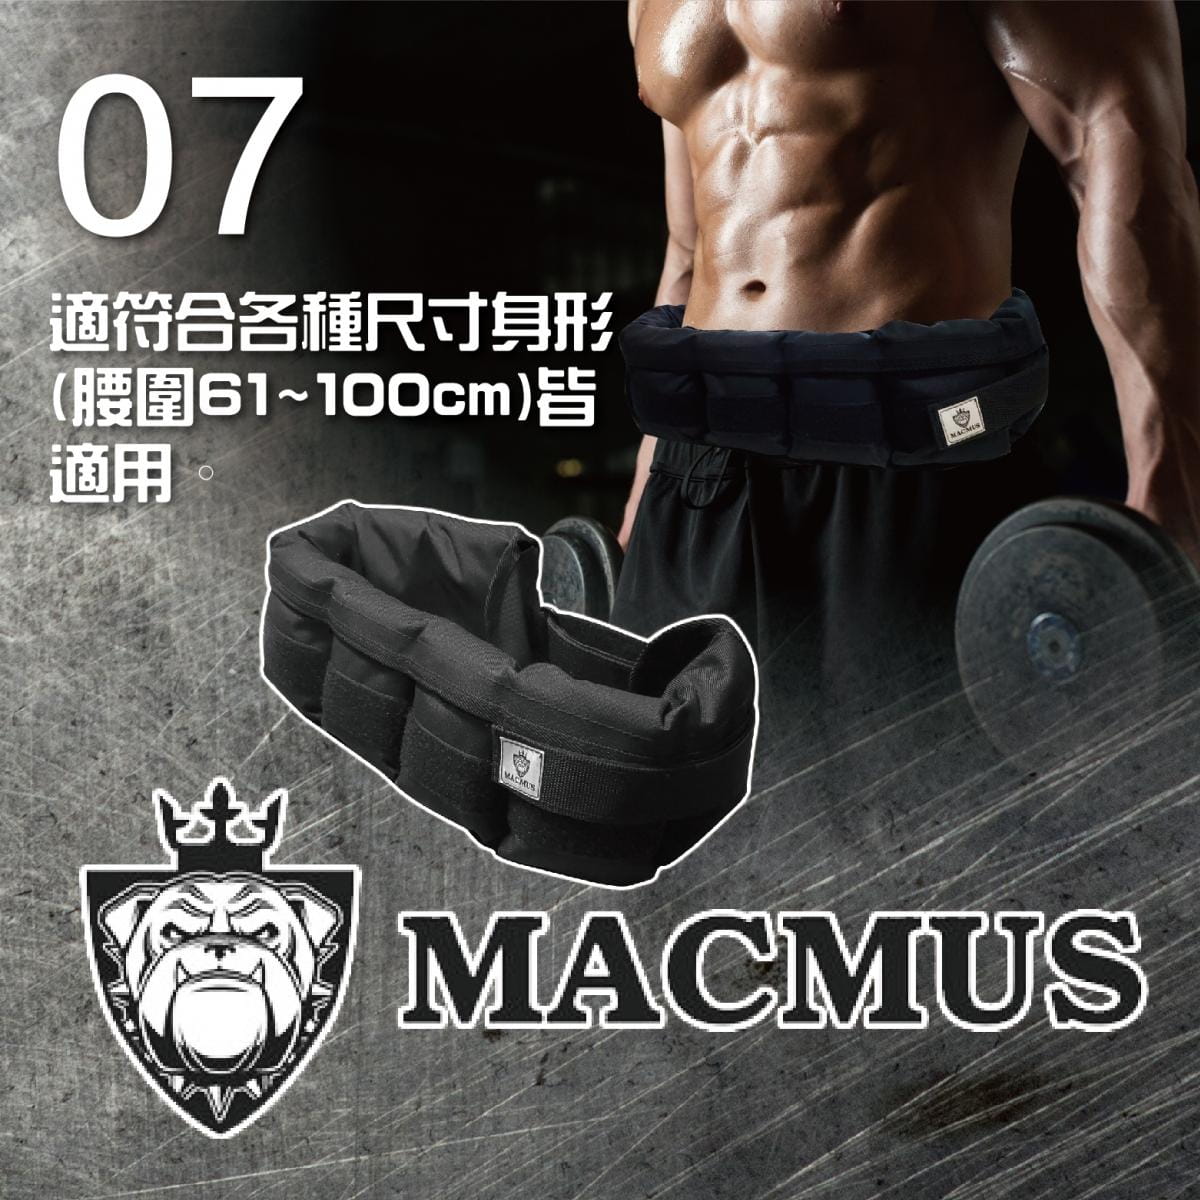 【MACMUS】12公斤負重腰帶｜8格式可調整重訓腰帶｜強化核心肌群鍛鍊腰部肌肉 5